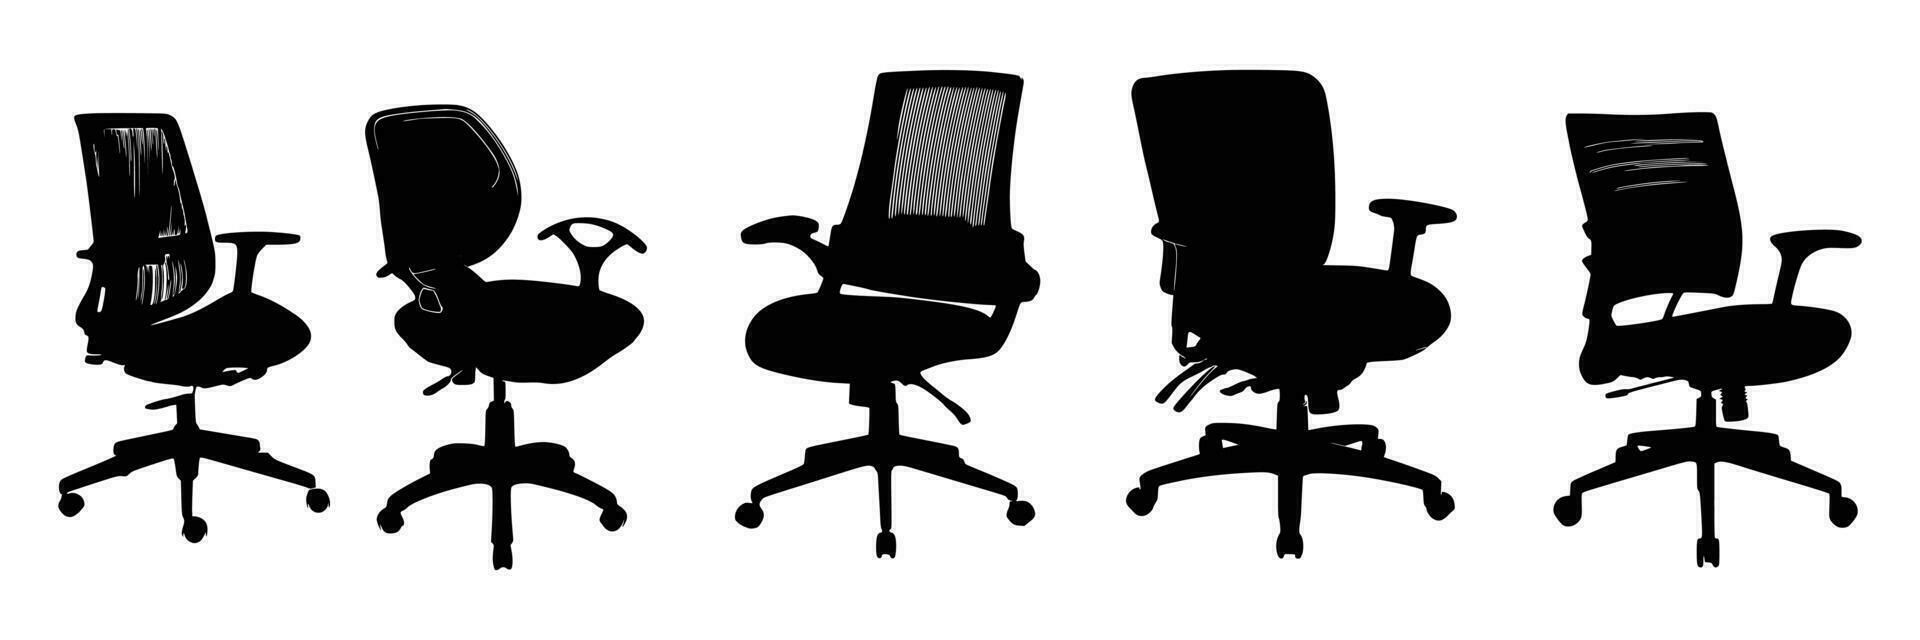 cinco escritório cadeiras silhuetas vetor Projeto.